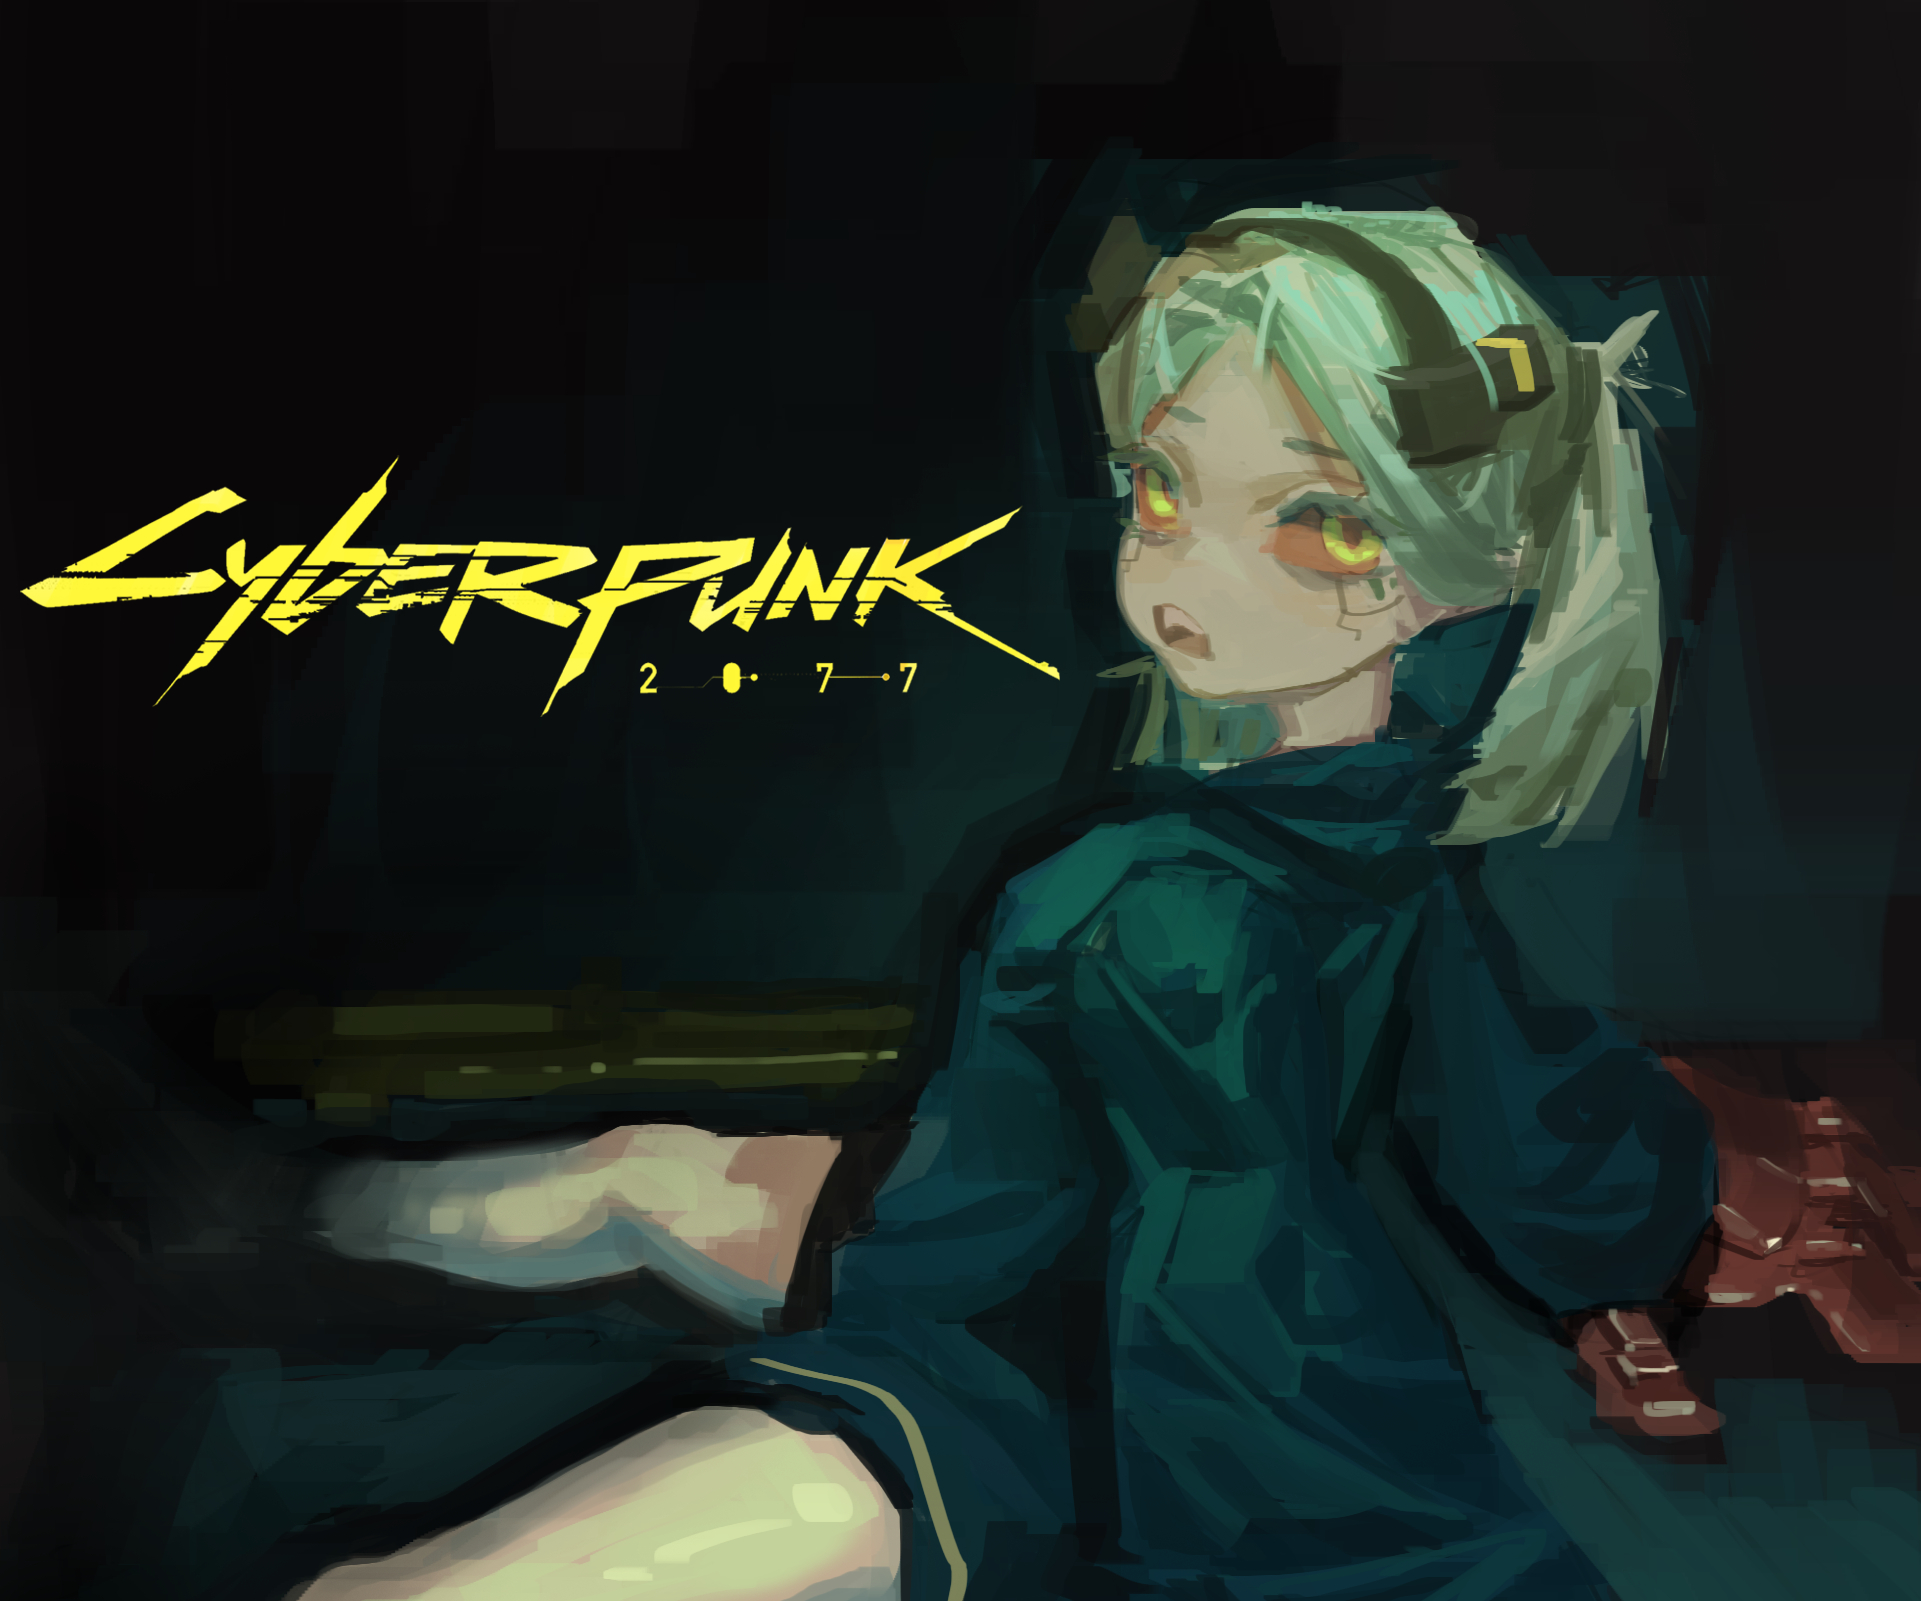 Cyberpunk and Rebecca iPhone 4 640x960 wallpaper